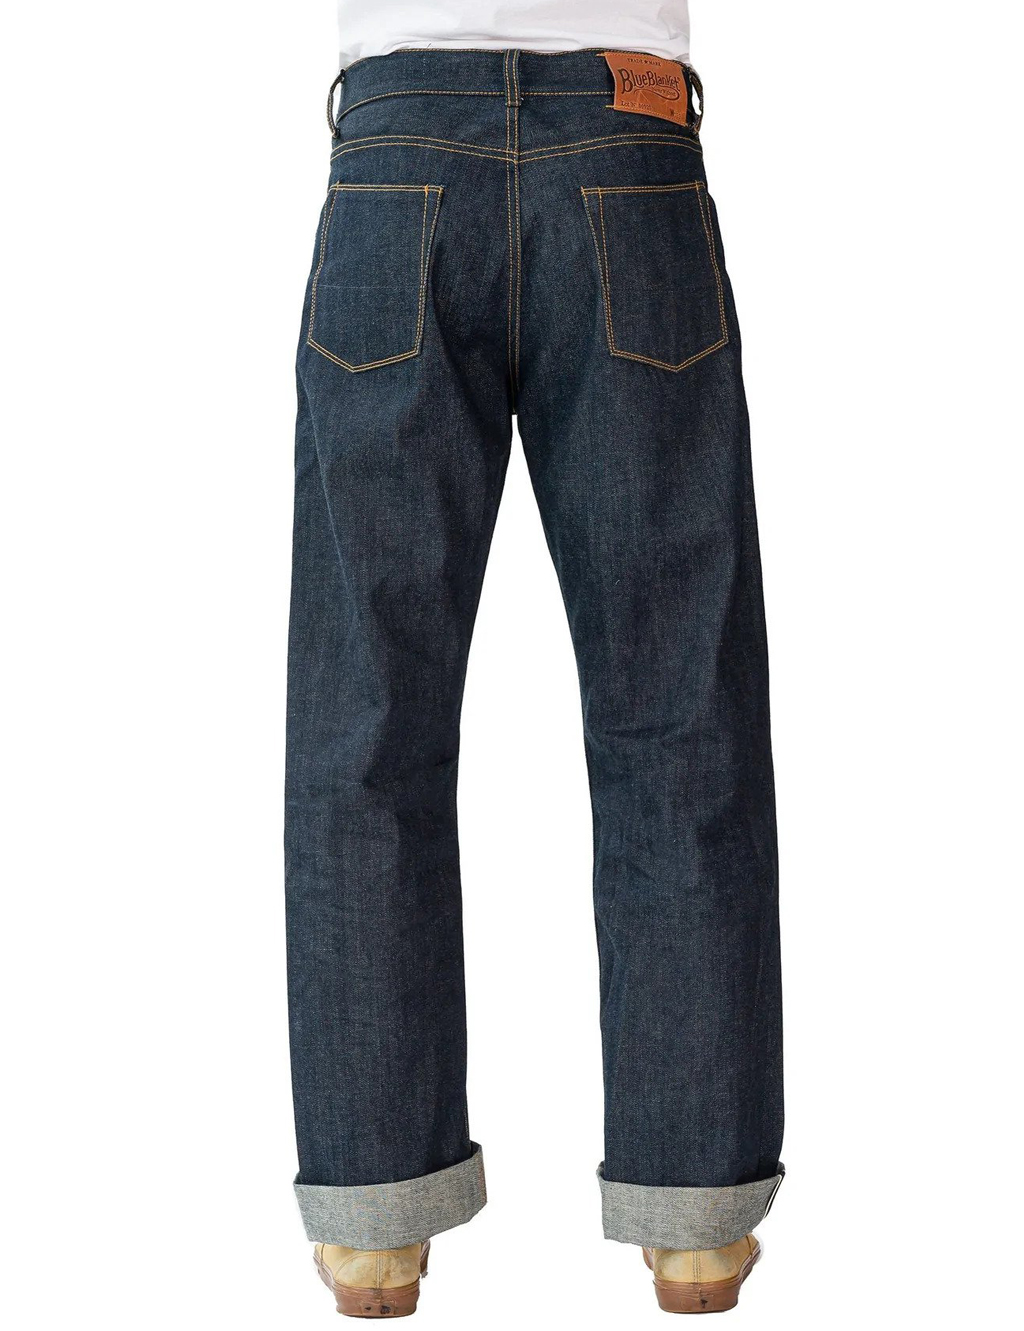 Sugar Cane slim fit Japanese selvedge raw denim star jeans SC40724N  CANE2833 | eBay